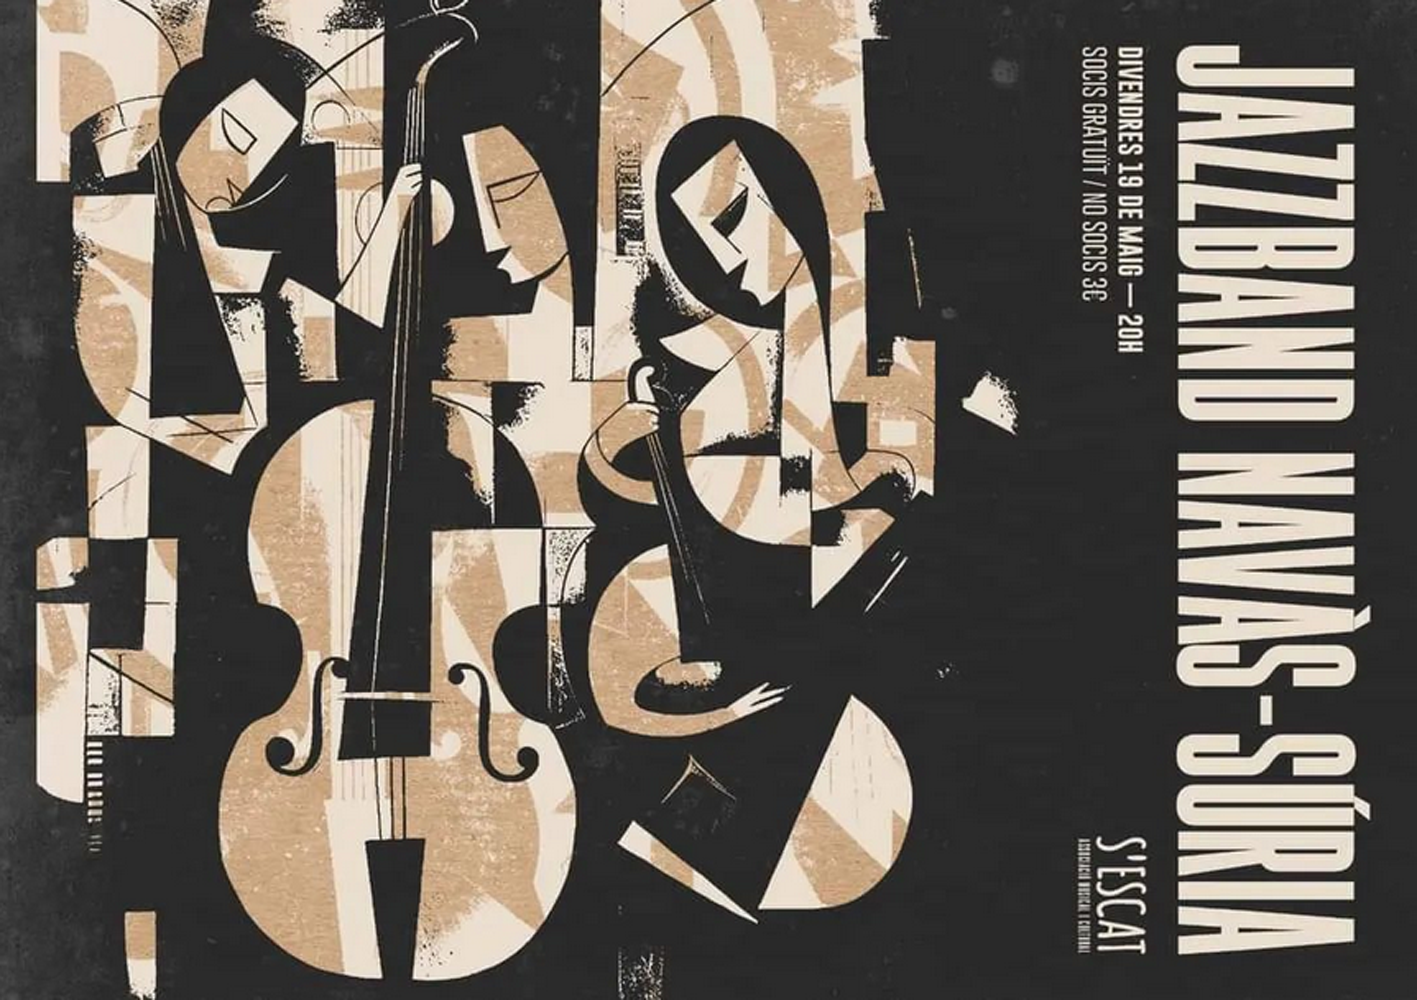 Cartell del concert de la JazzBand Navàs-Súria a Manacor (Mallorca) - Divendres 19 de maig.